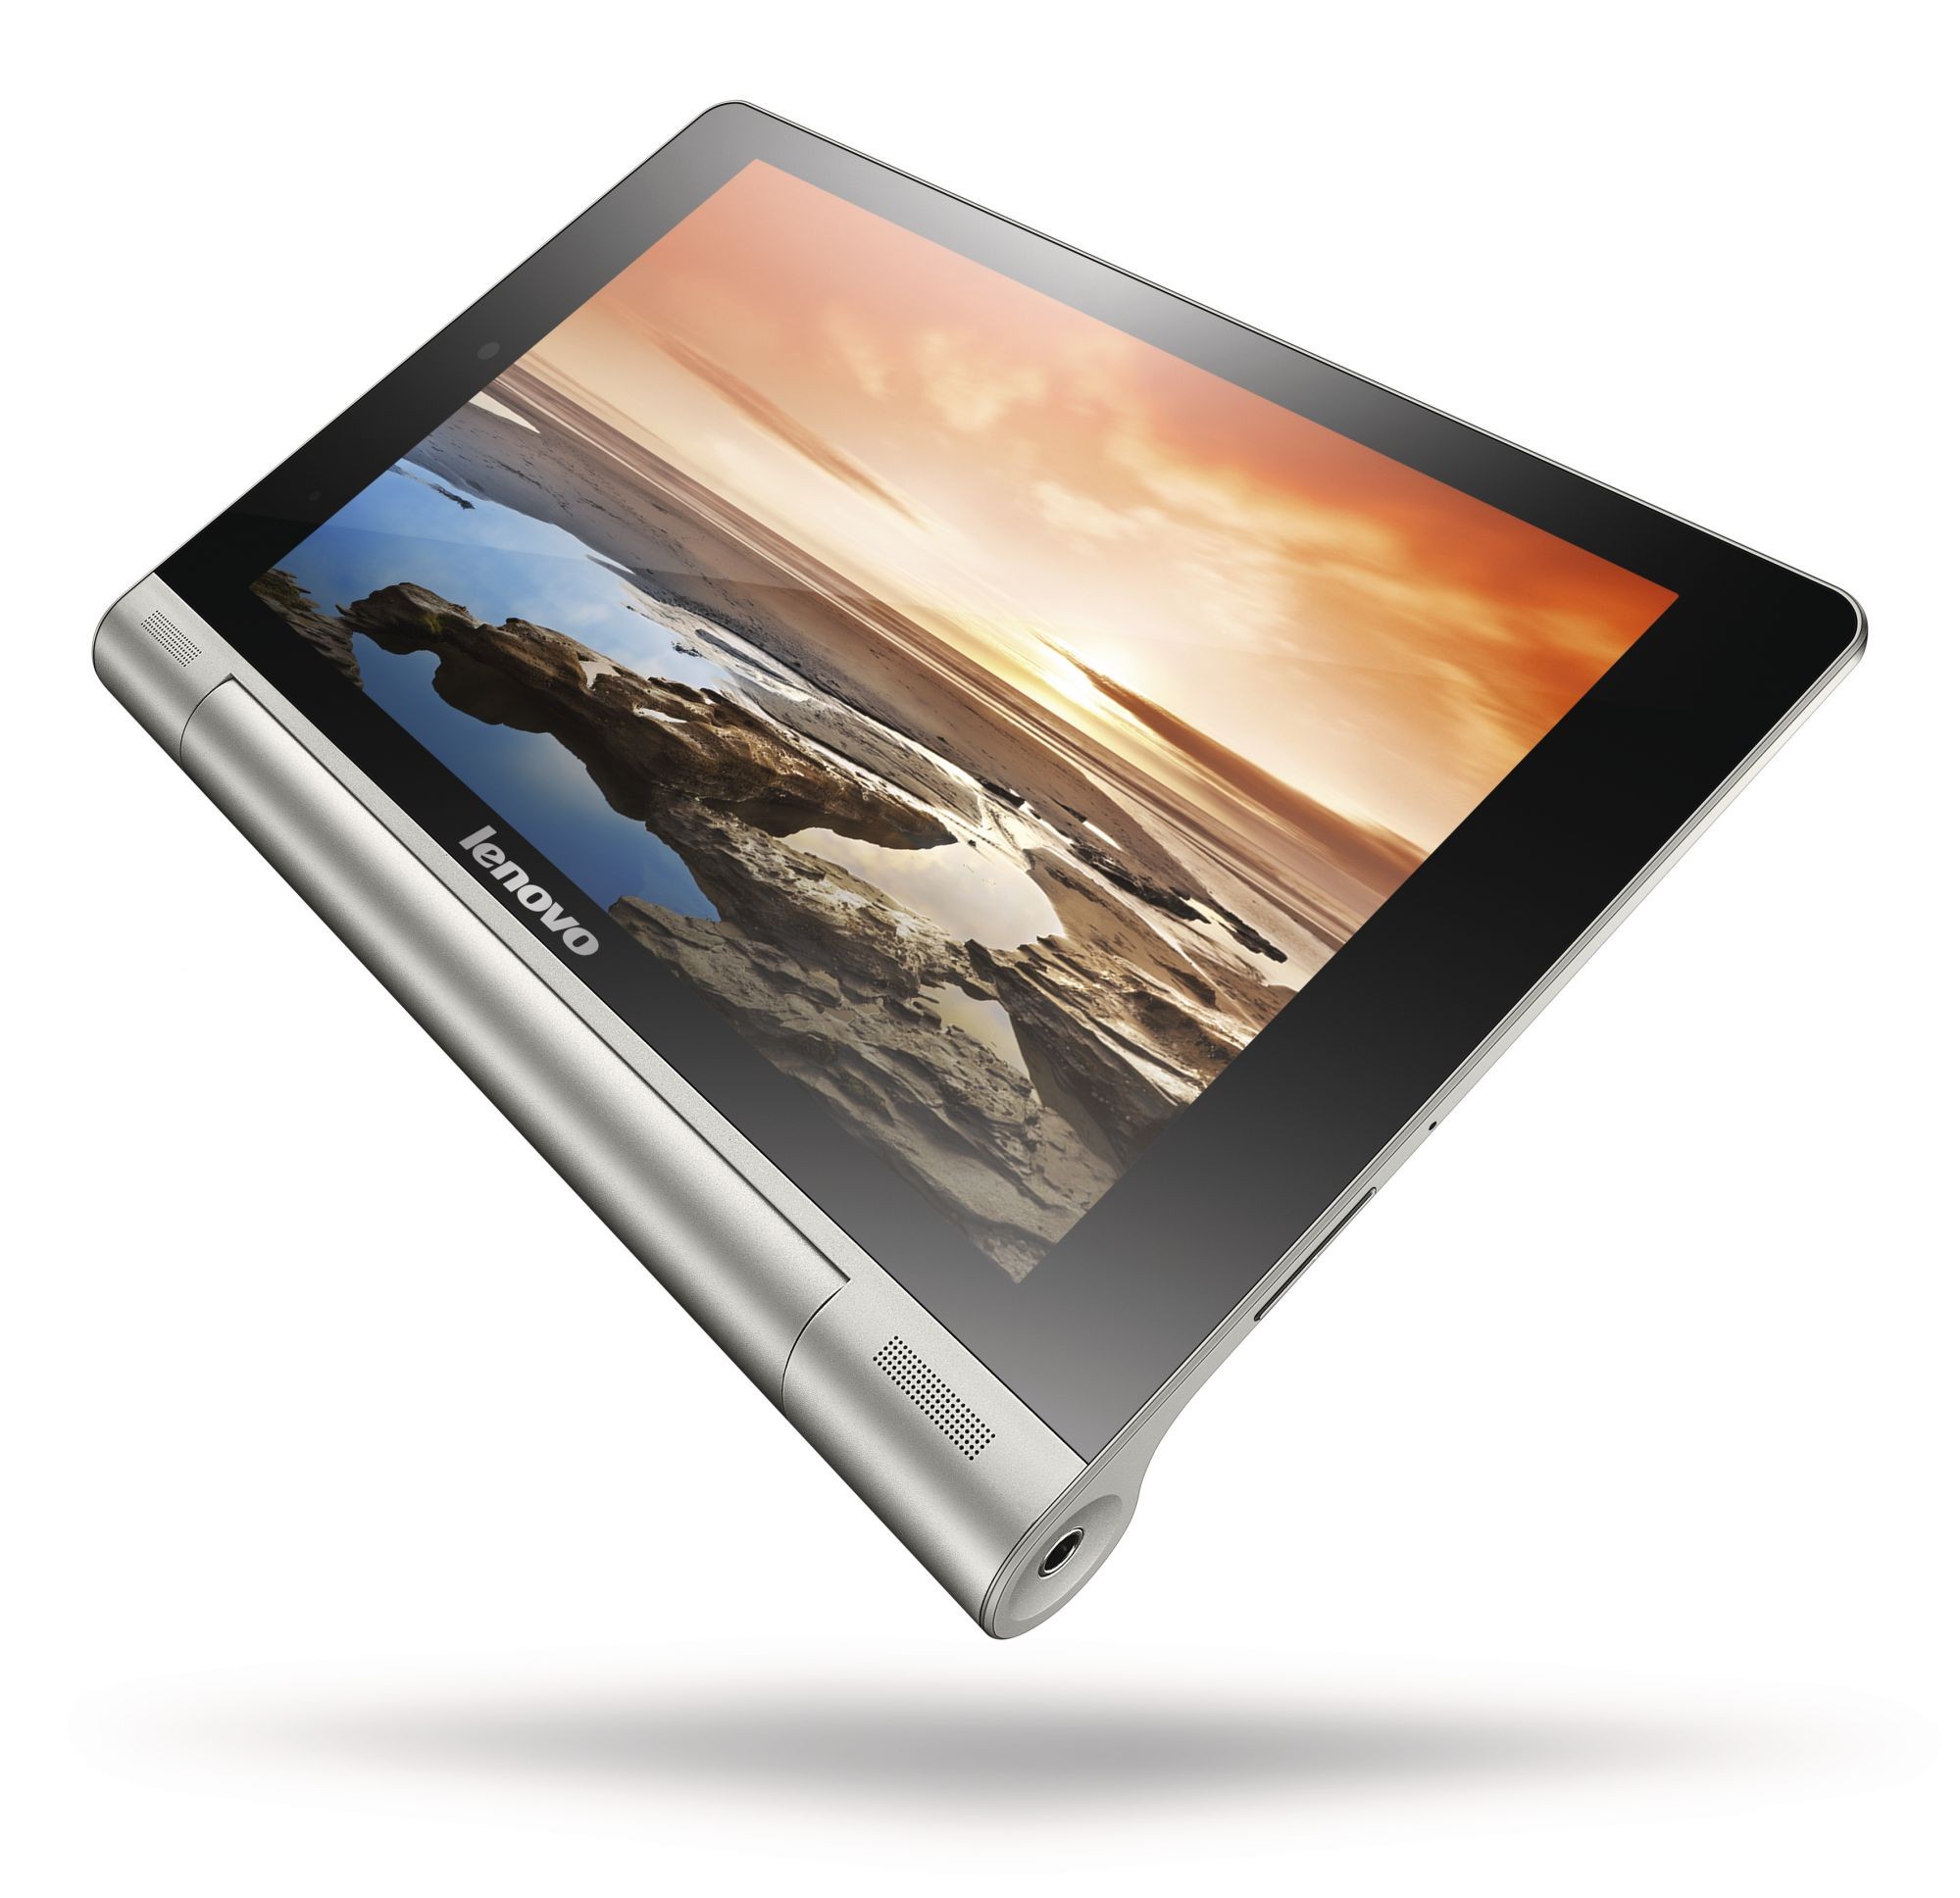 Купить планшет в ярославле. Планшет Lenovo Yoga Tablet 8 3 1gb 16gb. Планшет Lenovo Yoga Tablet 8 16gb 3g. Lenovo Yoga Tablet 10 b8000. Lenovo Yoga планшет 10 дюймов.